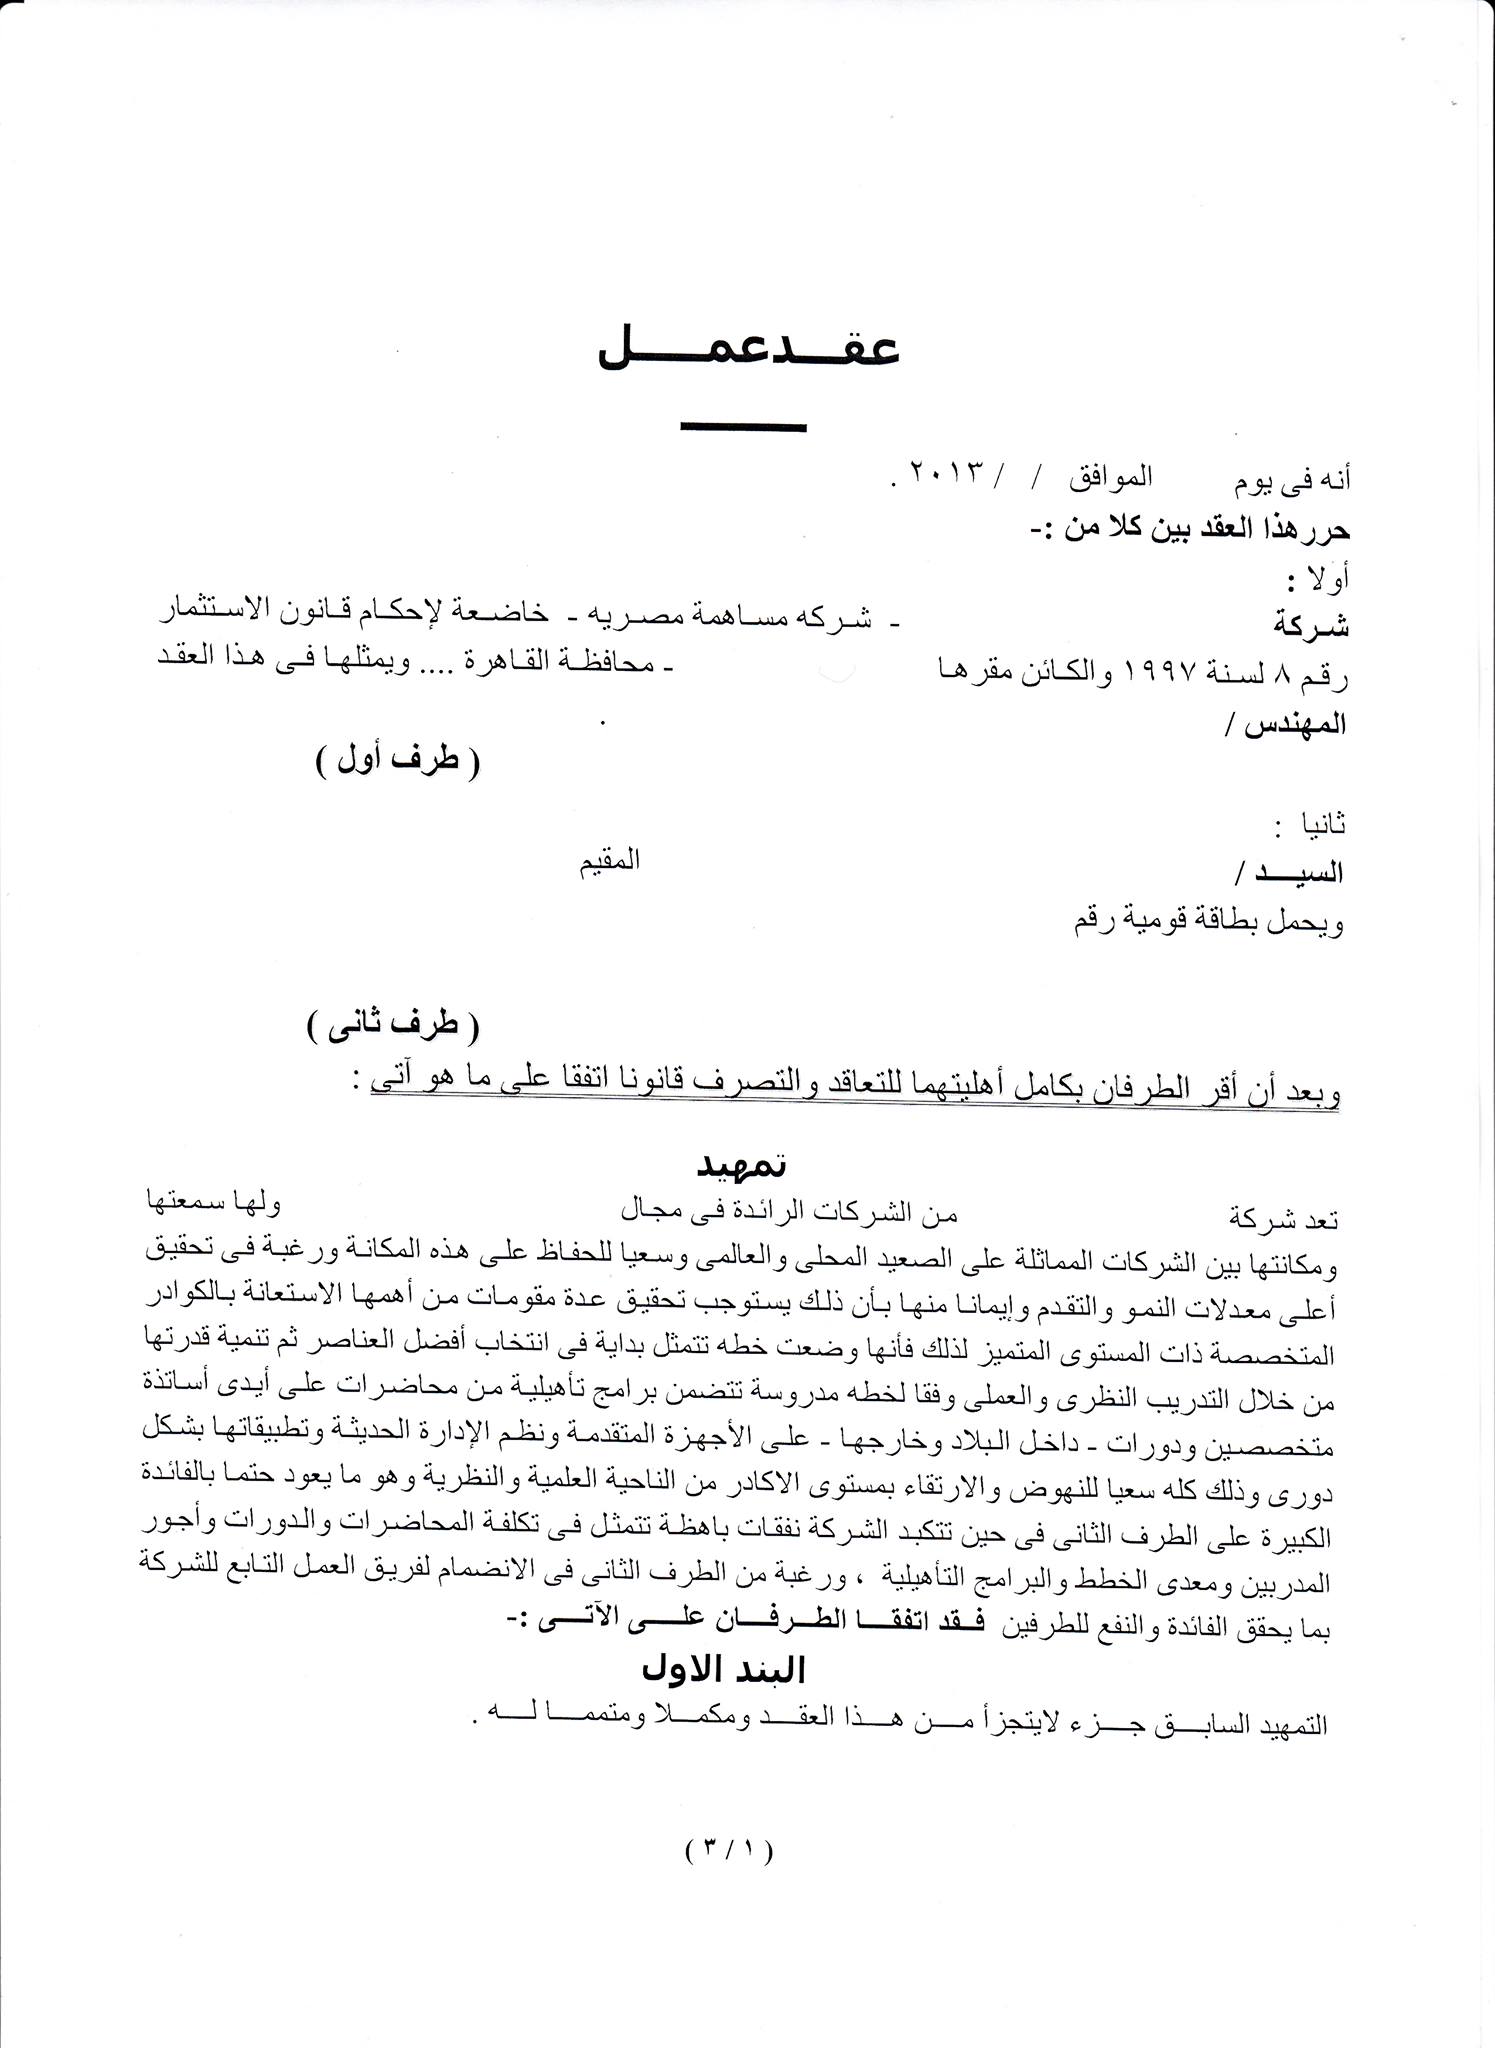 صيغة عقد عمل محدد المدة صيغة القانون المصري